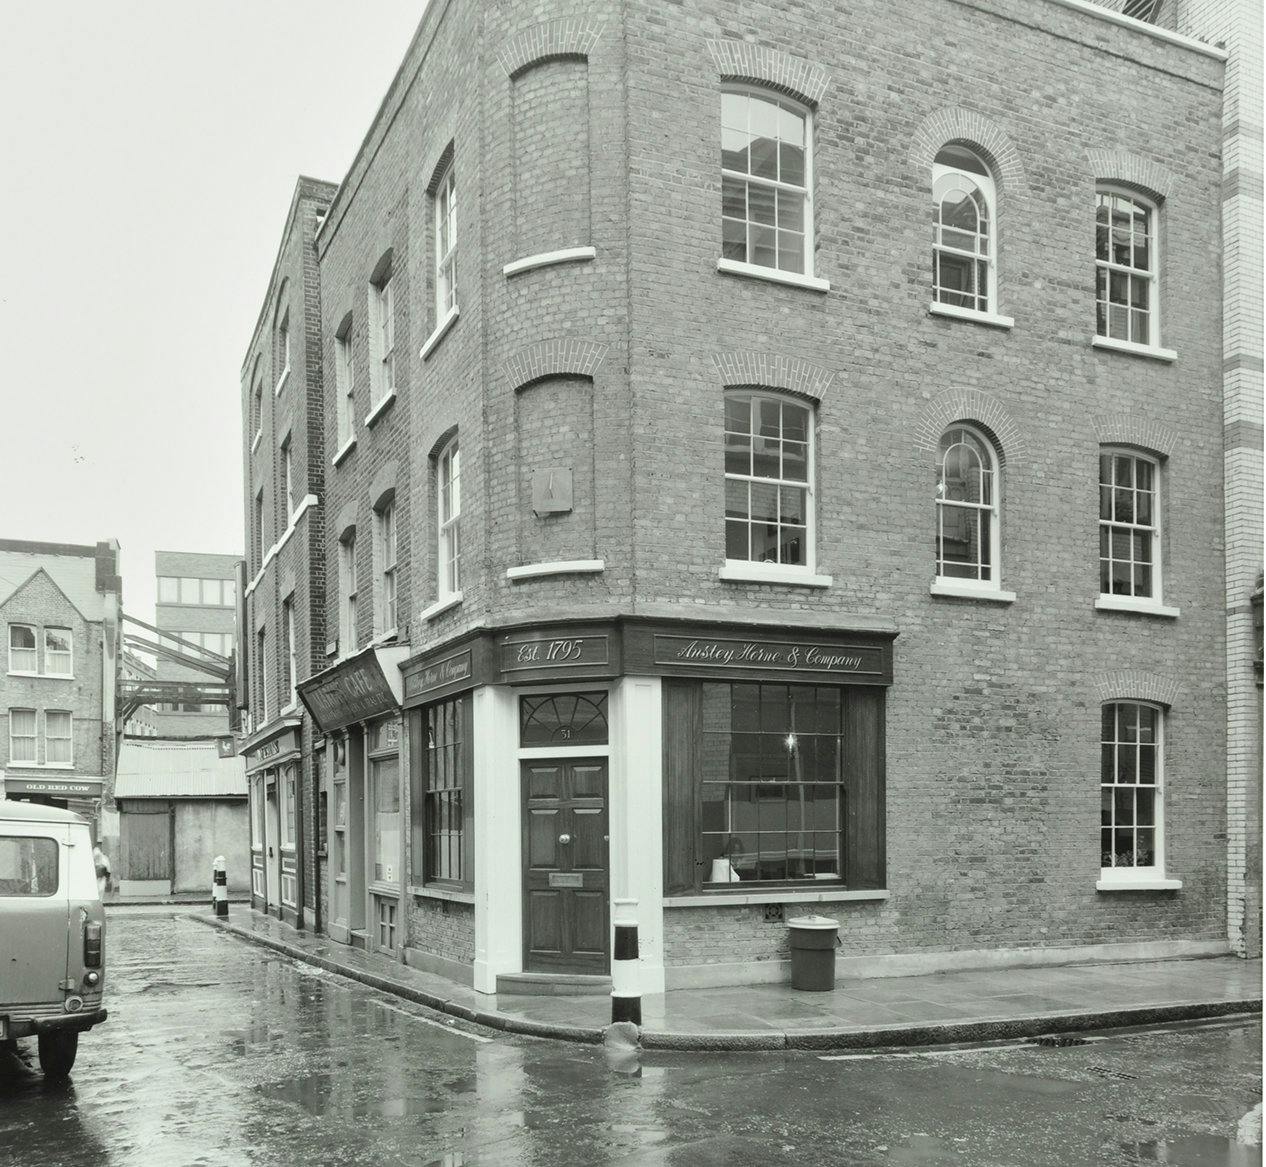 Anstey Horne 1977 31 Newbury Street